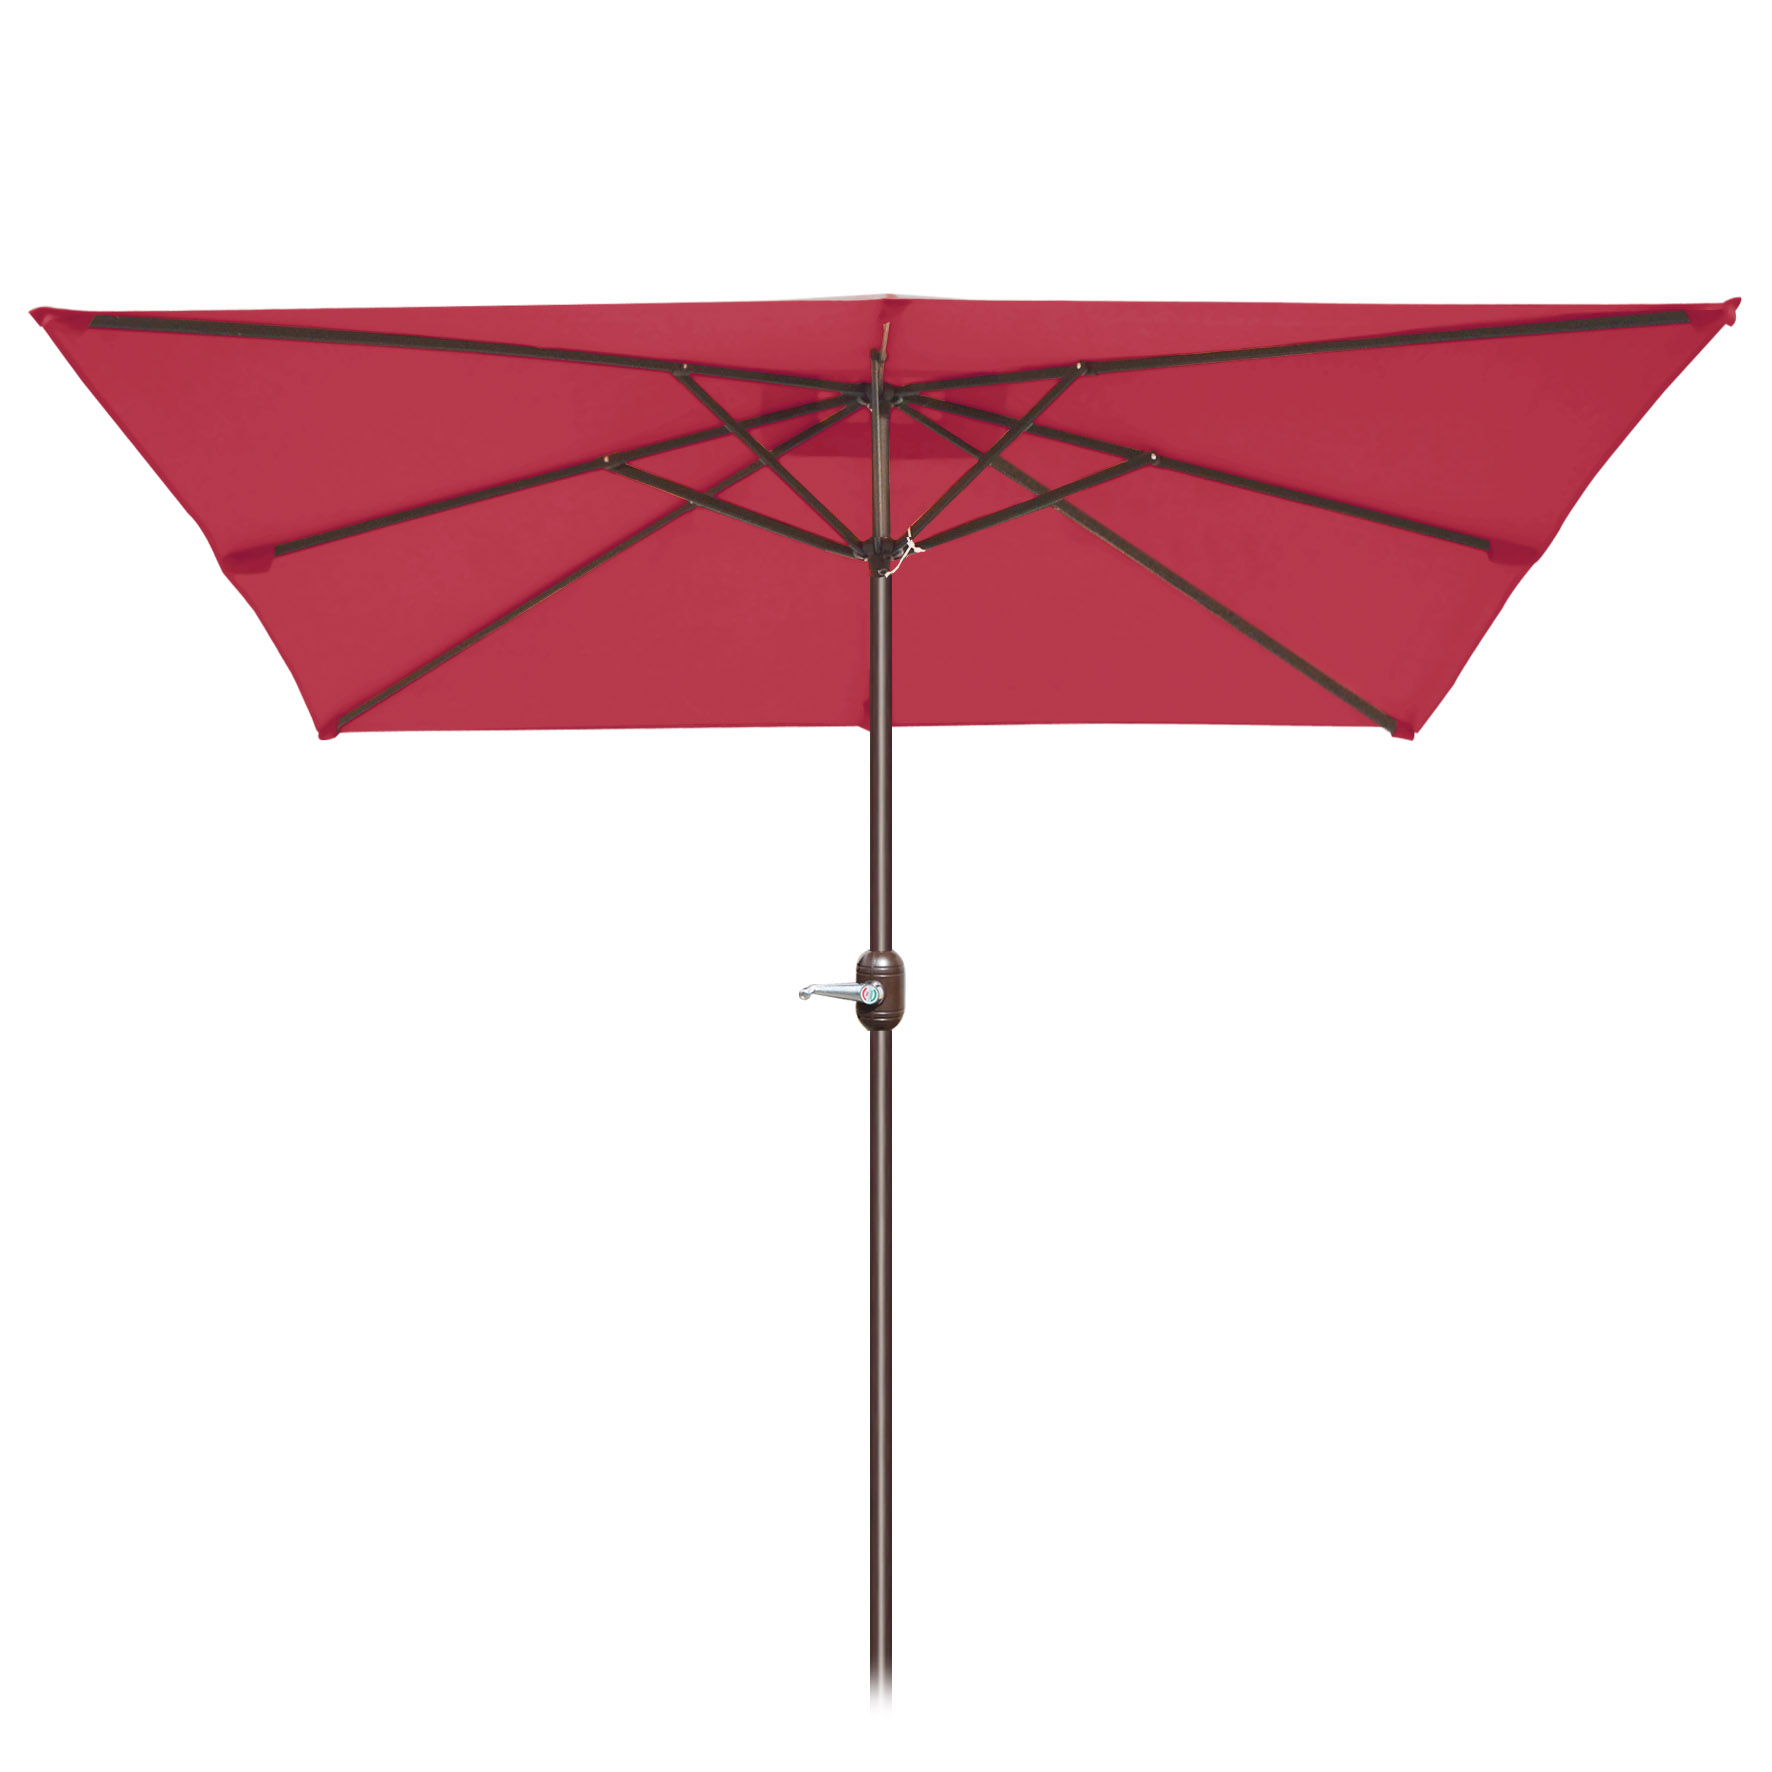 Sunny 8' x 8' Outdoor Patio Umbrella Sunshade Table Market Umbrella with Tilt&Crank for Garden, Deck, Backyard - image 2 of 7